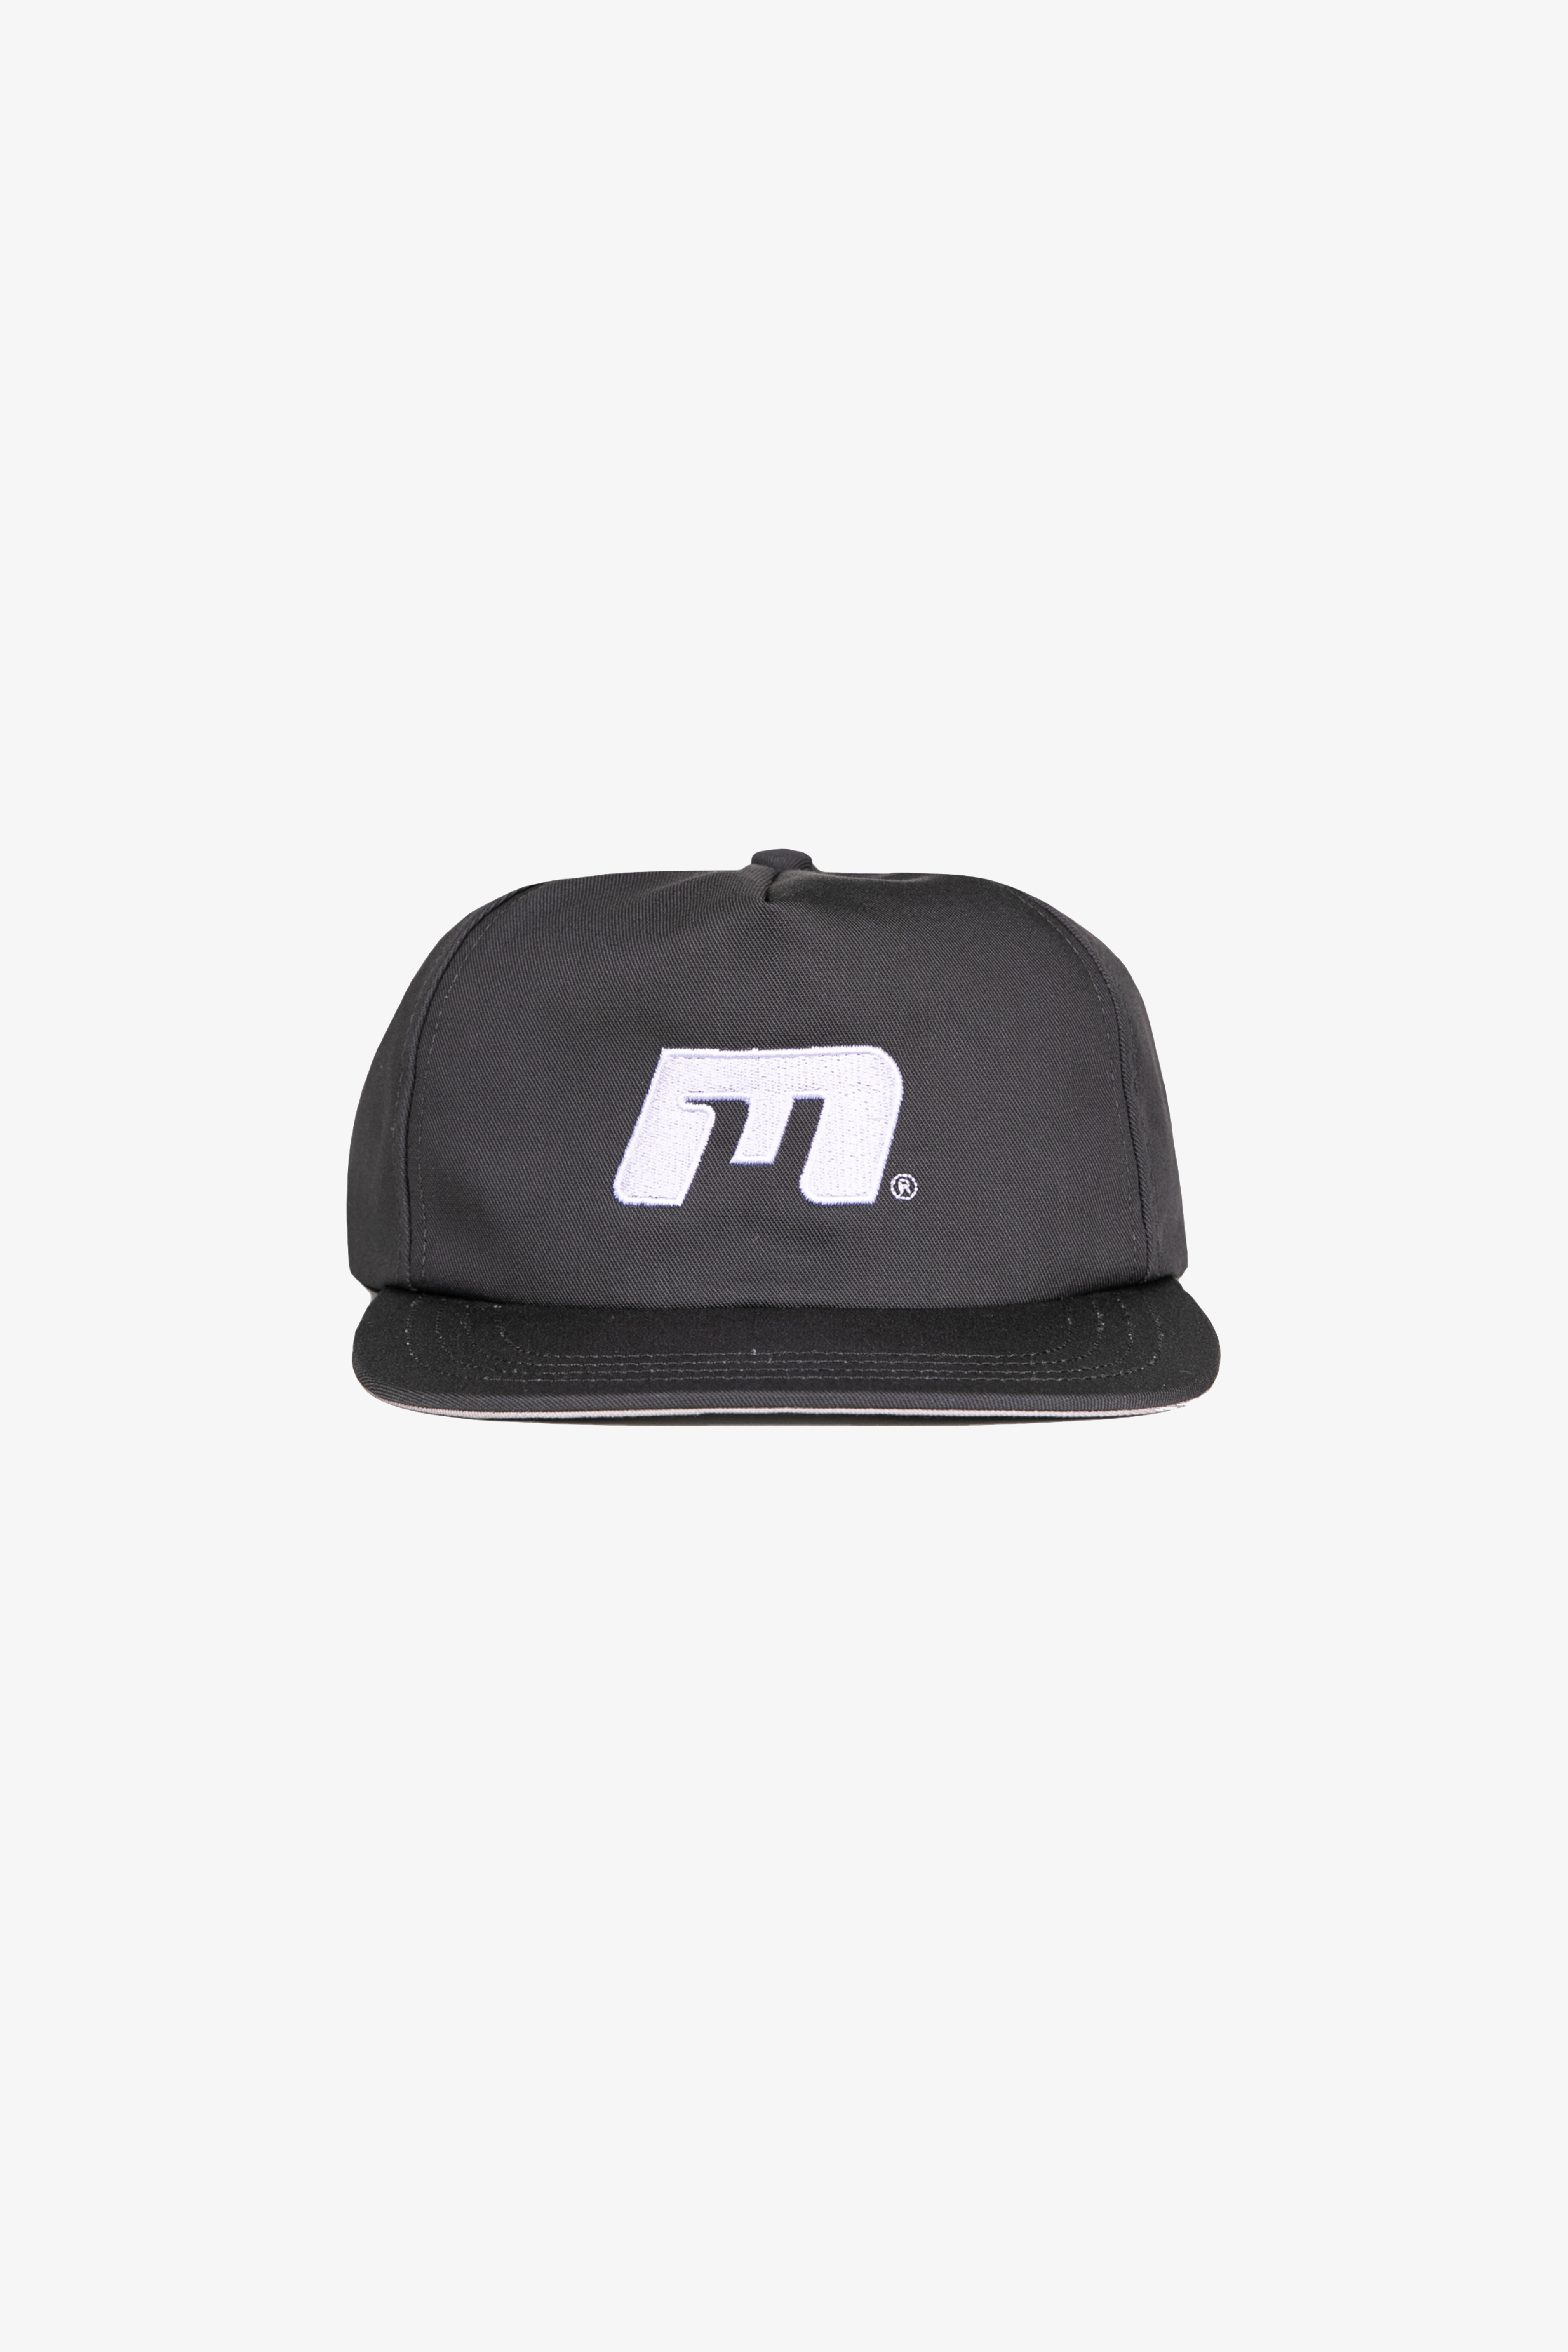 "m" 5 panel hat